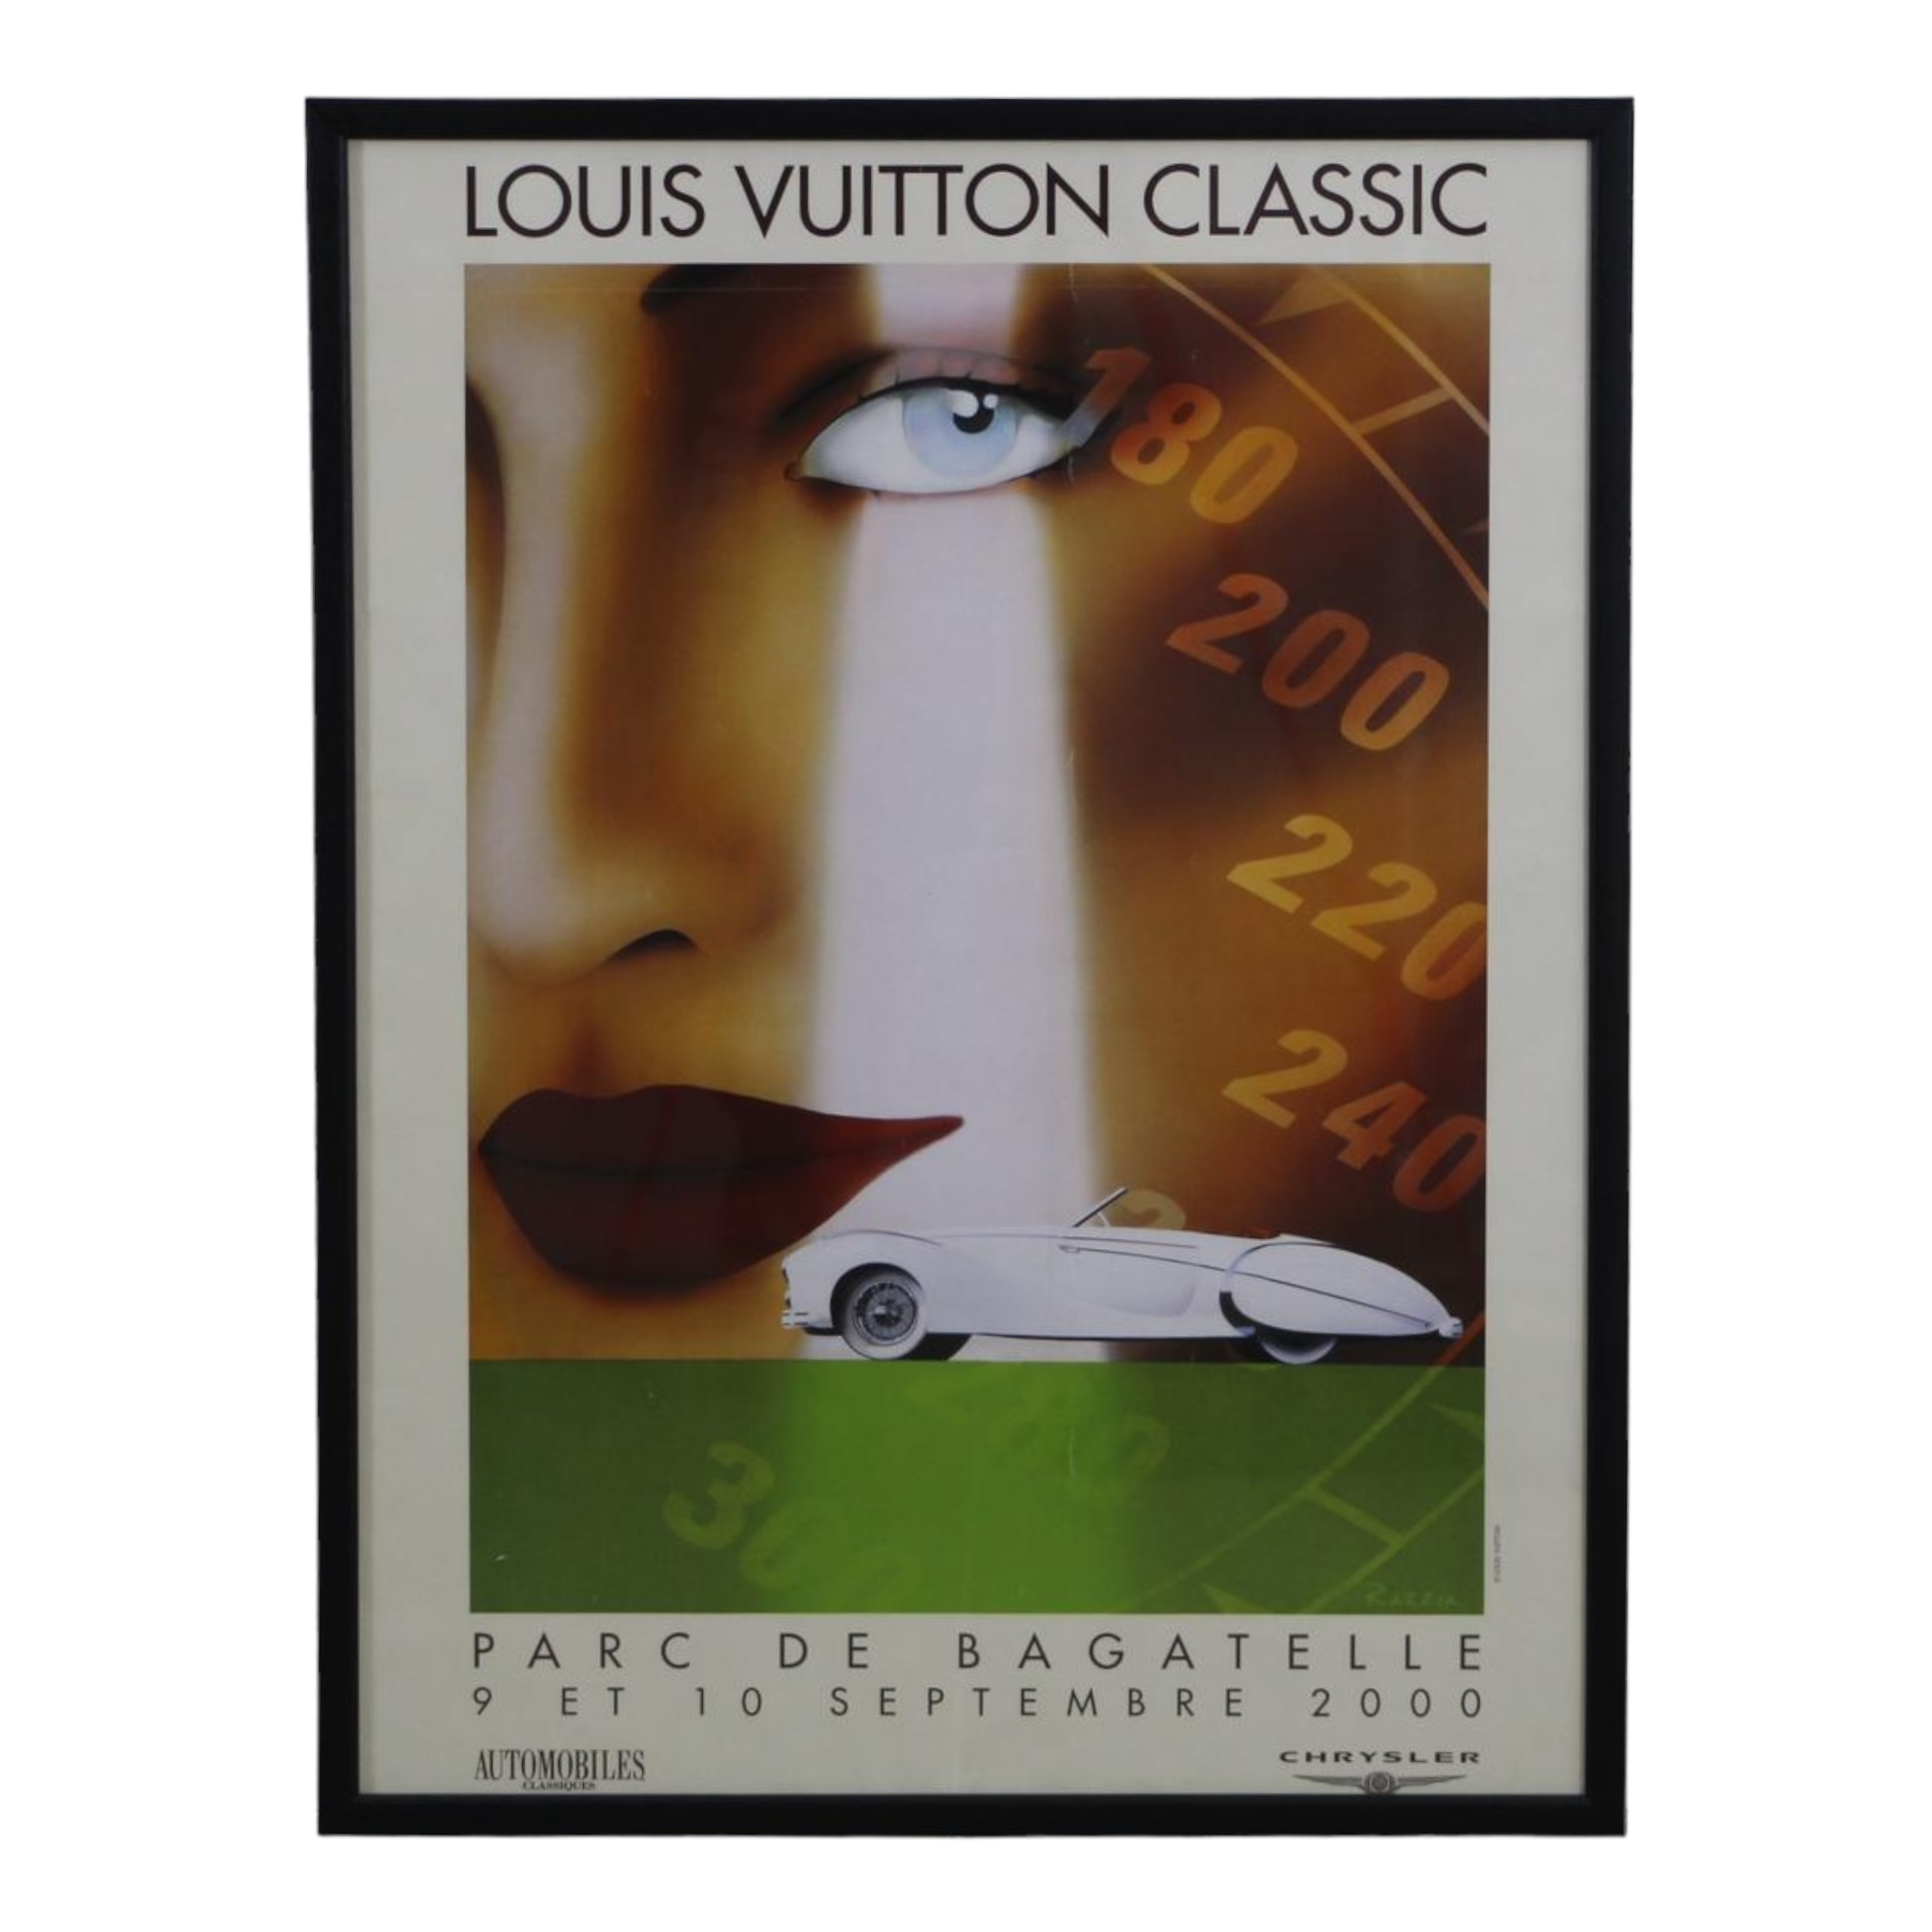 Louis Vuitton Parc de Bagatelle Concours d' Elegance 2000 Poster by Ra –  ILWT - In Luxury We Trust